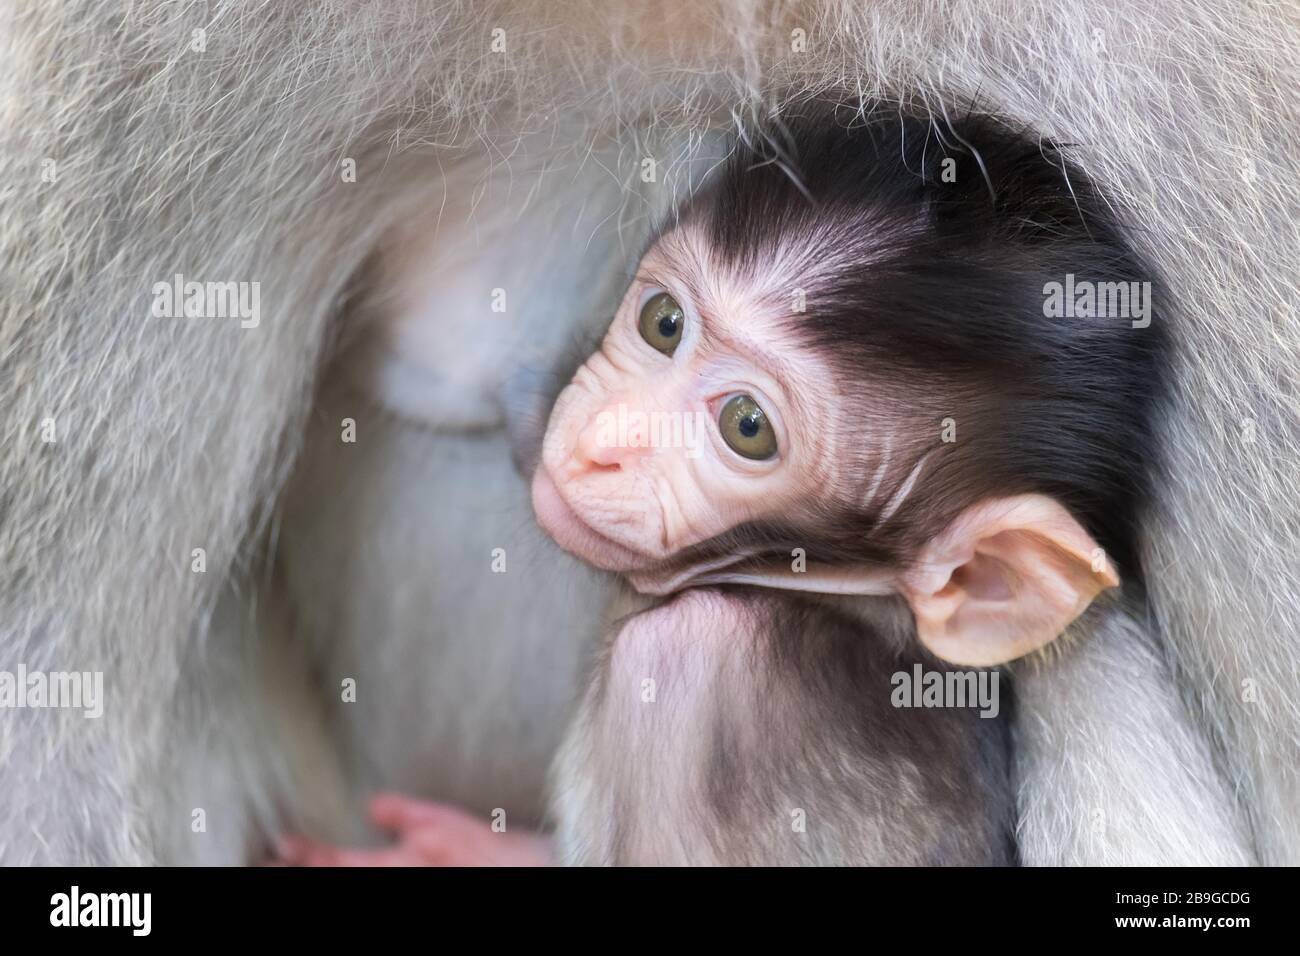 Close-up schüchtern Affenbaby verstecken und Saugen der Mutter Brust. Tier parenting Konzept. Bali, Indonesien Stockfoto